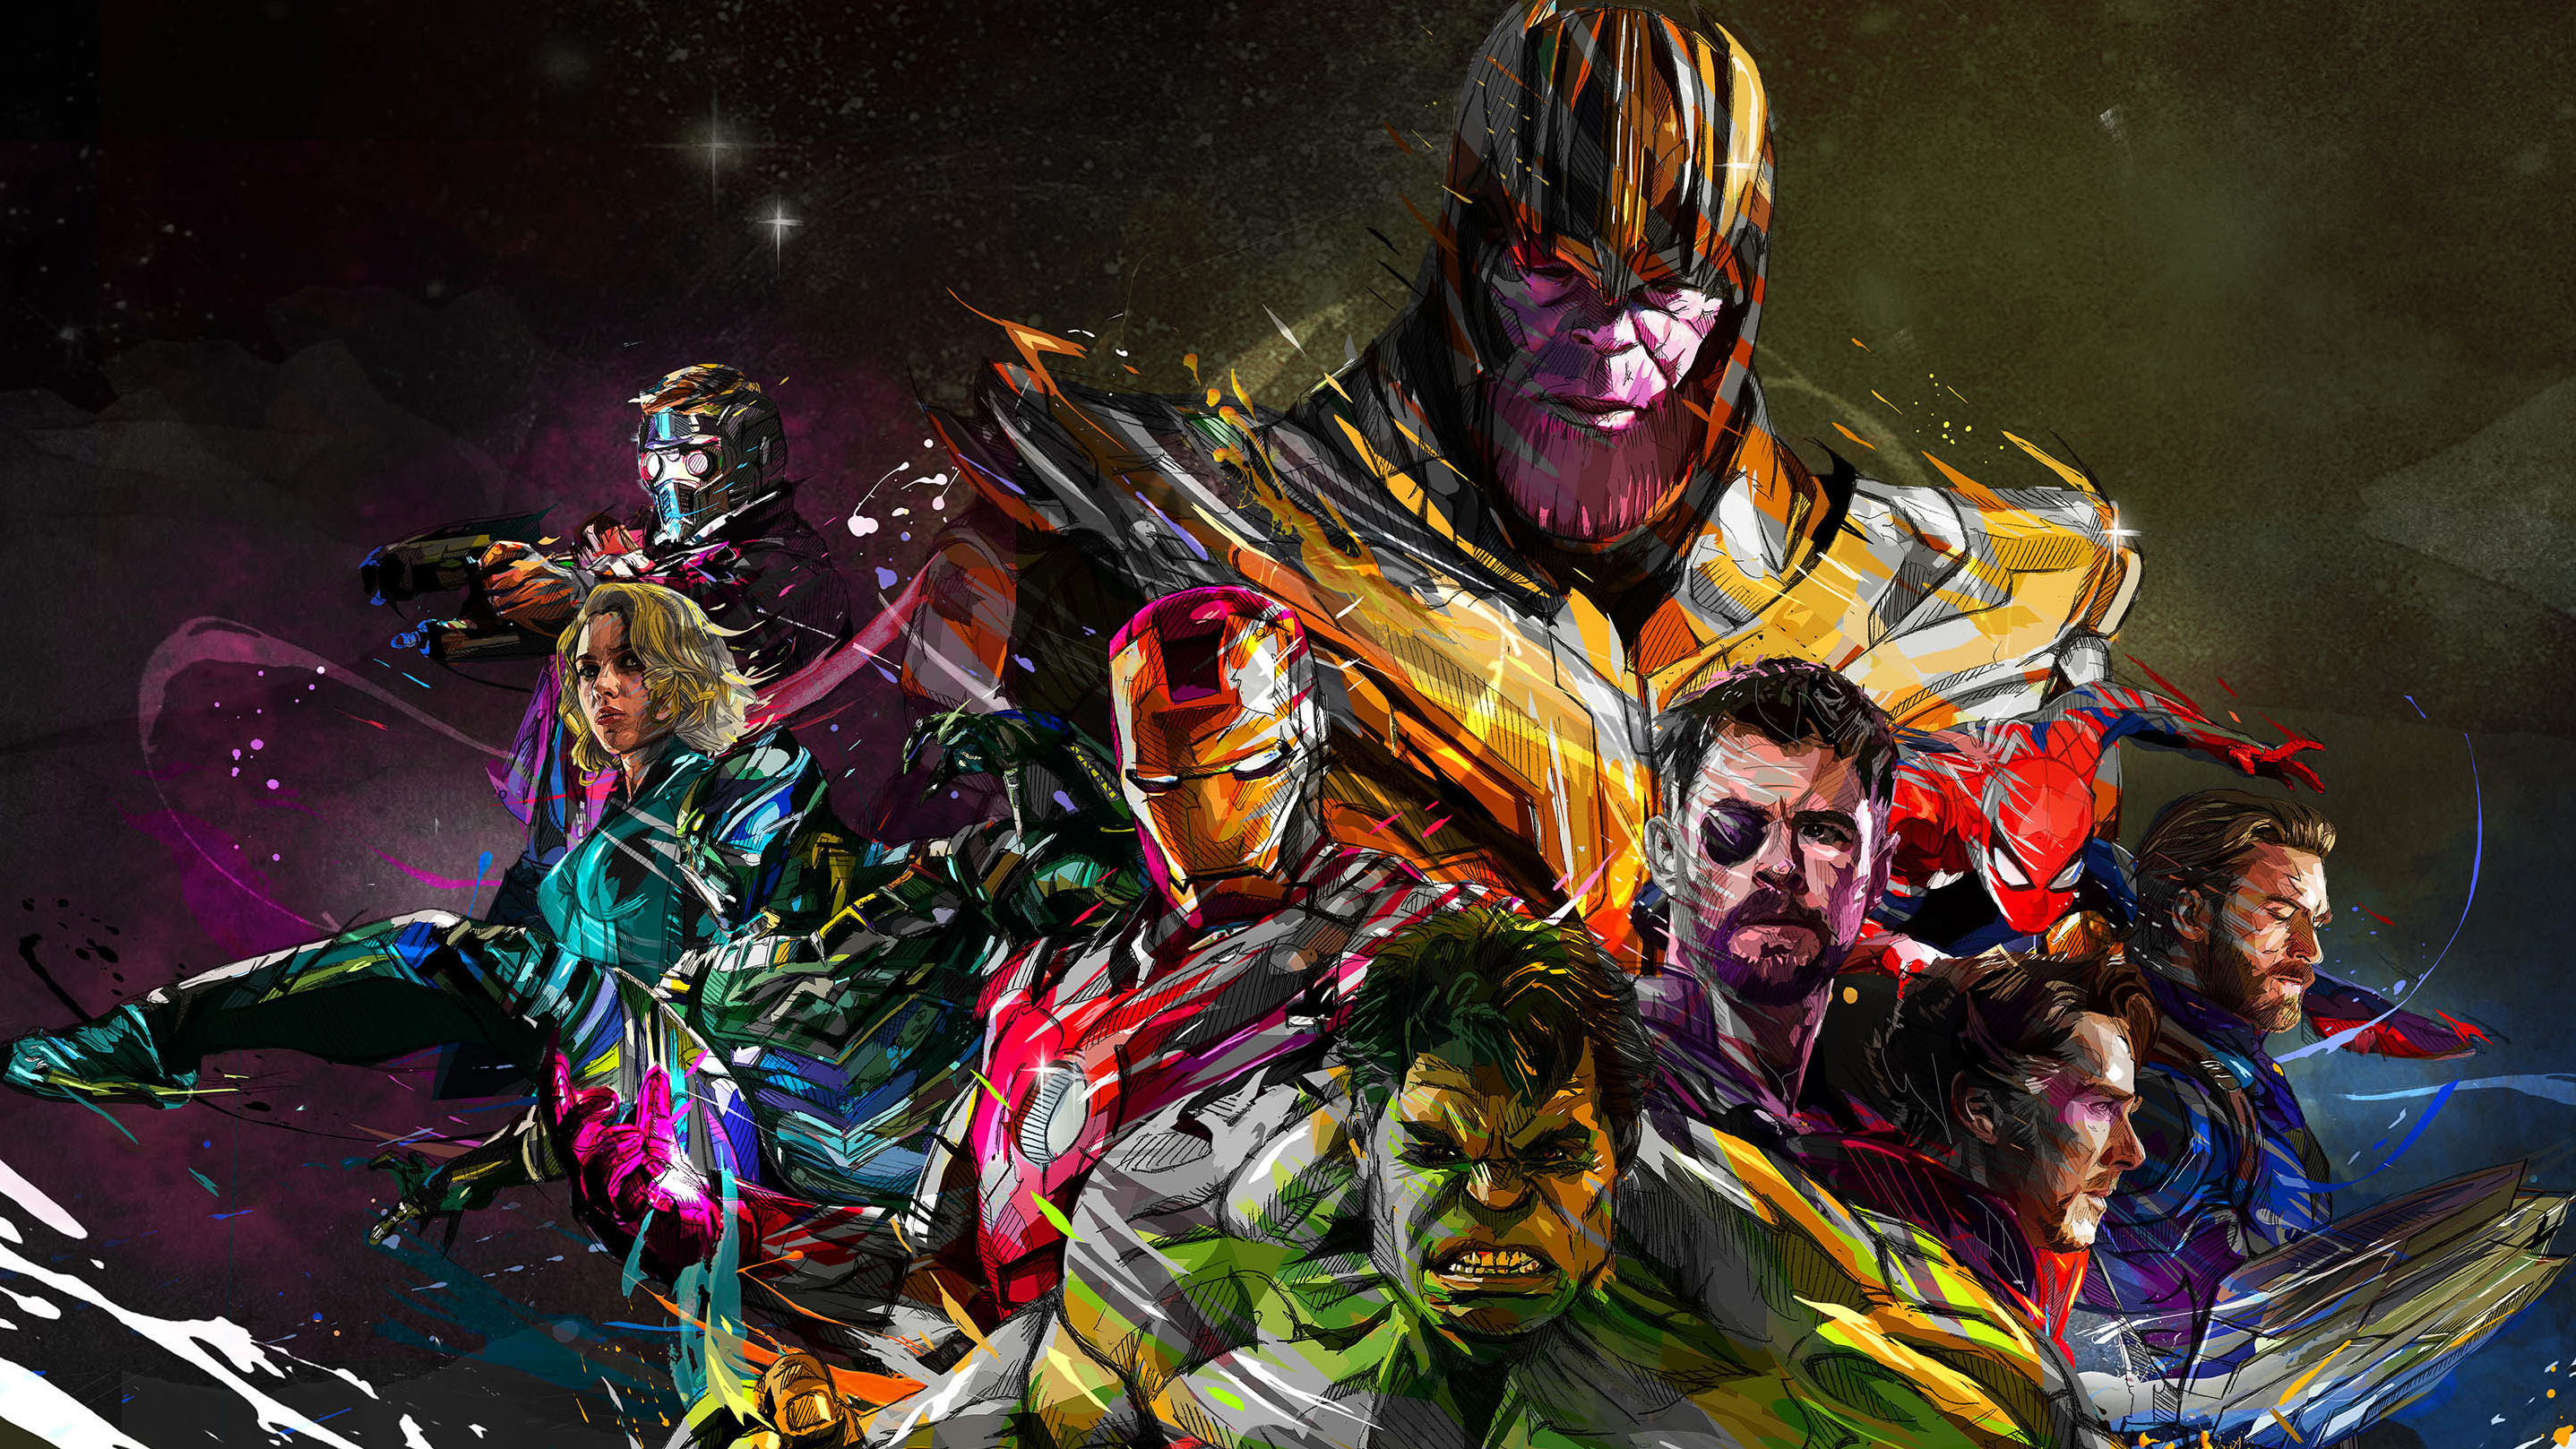 Marvel's Avengers Wallpapers